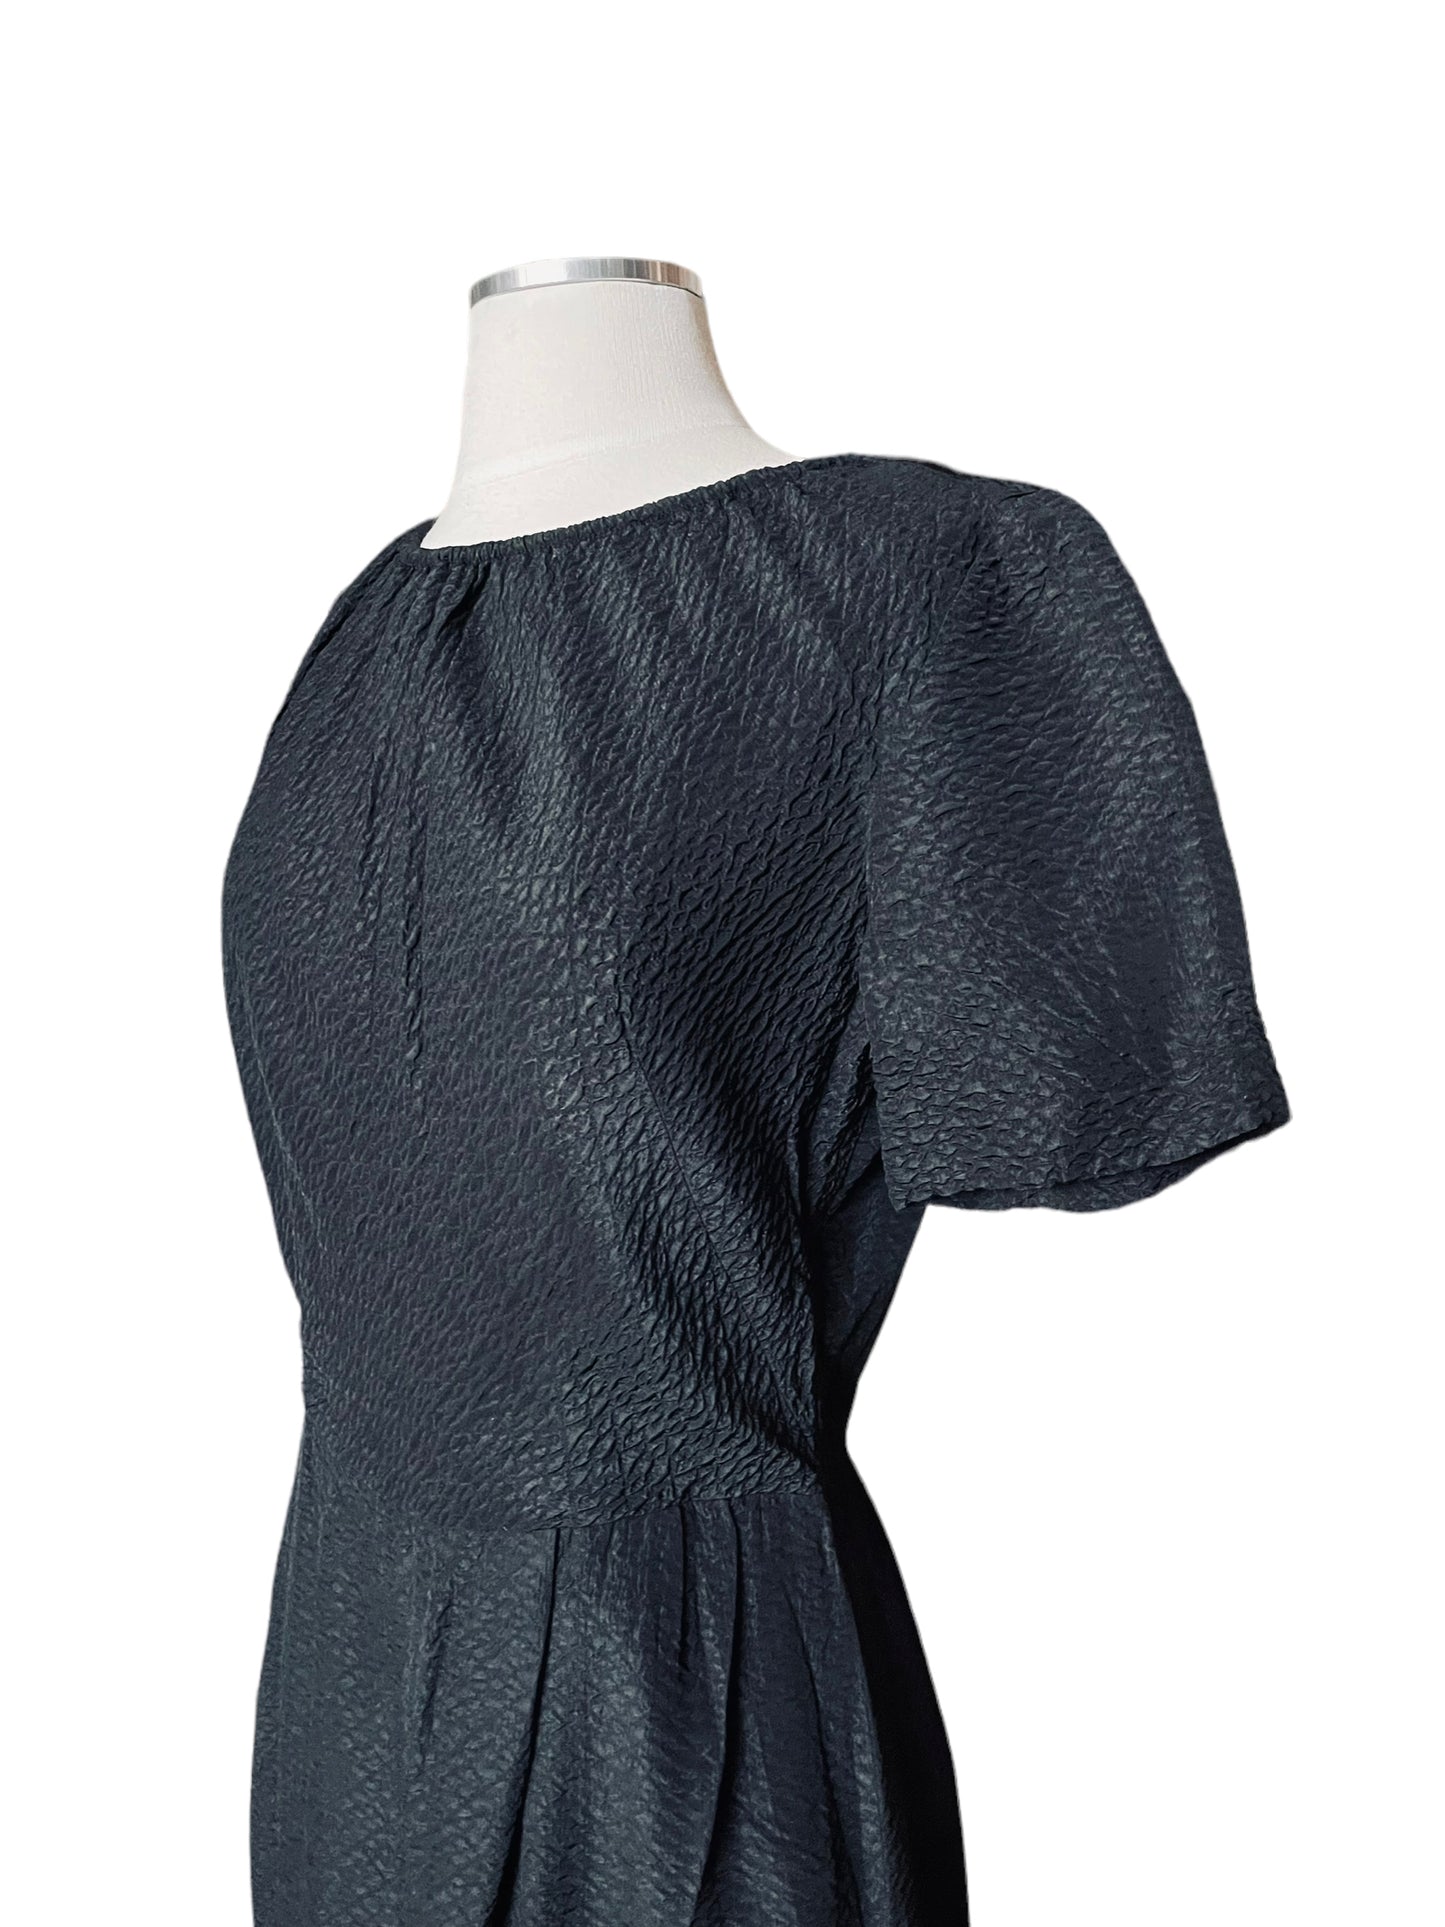 Front left side view of Vintage 1950s Black Textured Dress by Parkshire |  Barn Owl Vintage | Seattle Vintage Dresses